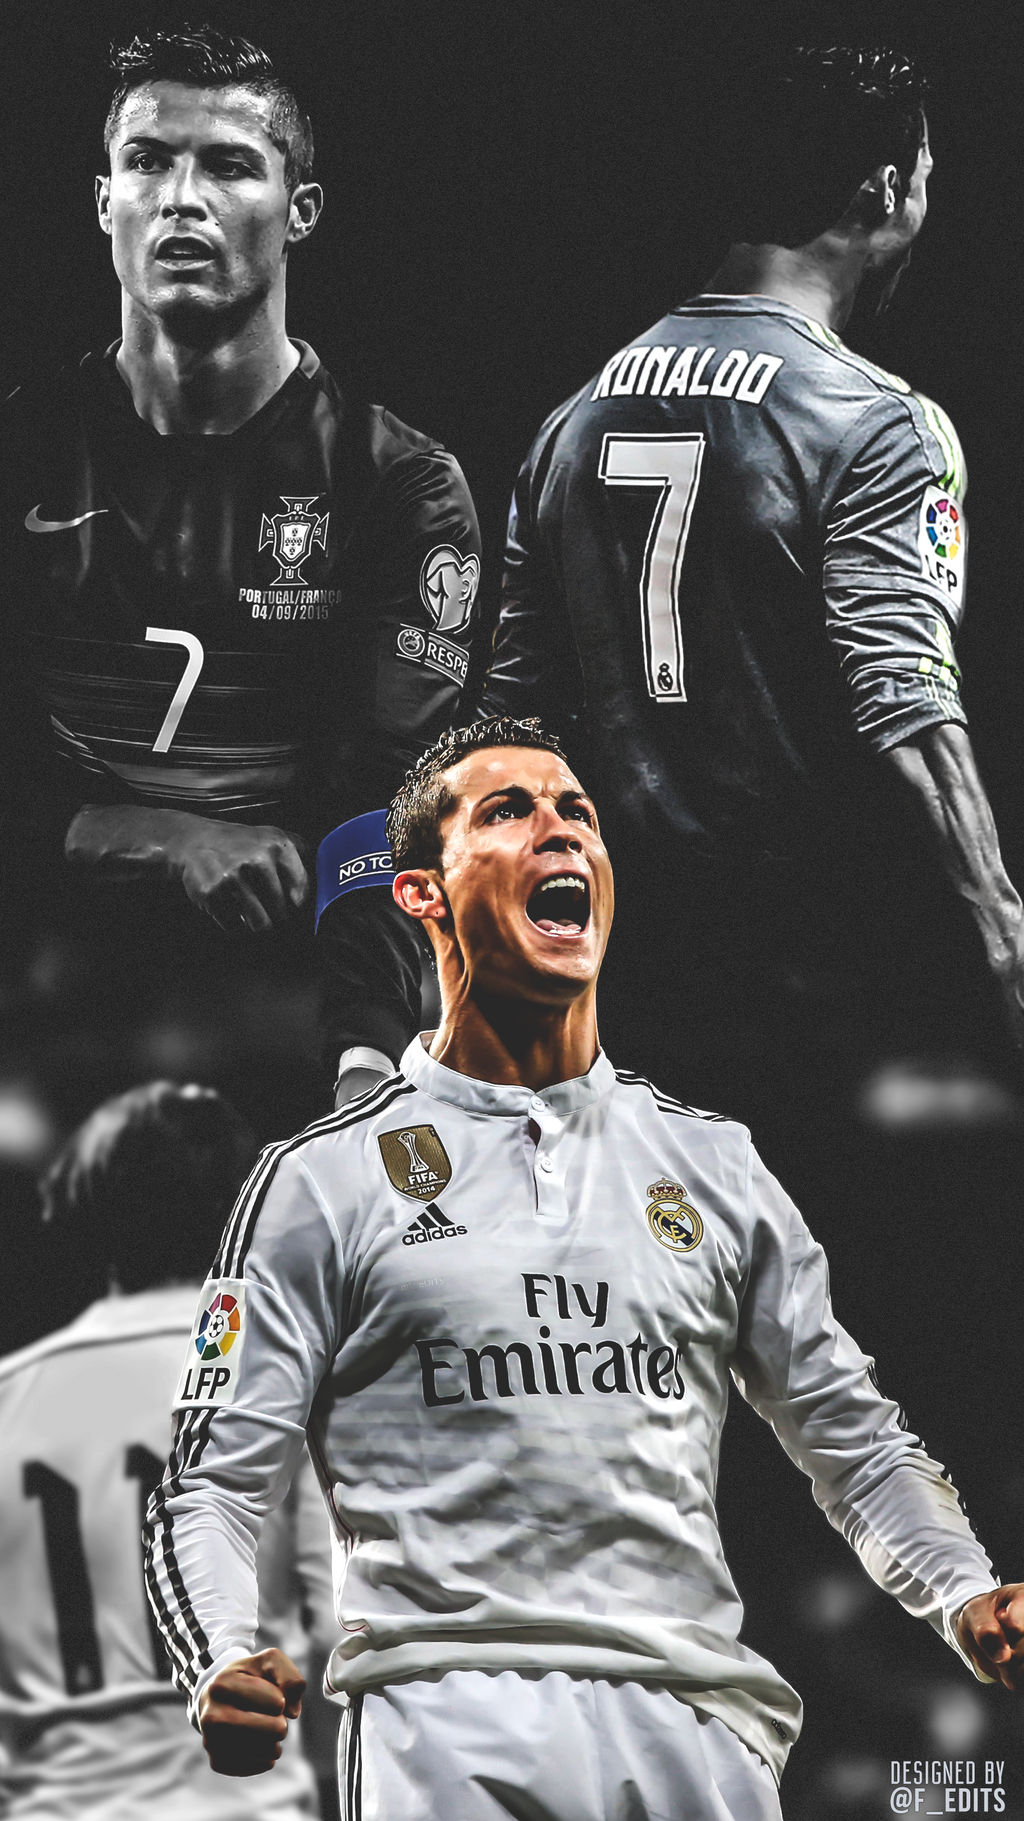 Hình nền của Cristiano Ronaldo là một điều không thể bỏ qua cho những fan hâm mộ của anh ta. Hãy xem hình nền này để cảm nhận được sự nổi tiếng và tài năng của siêu sao bóng đá người Bồ Đào Nha.